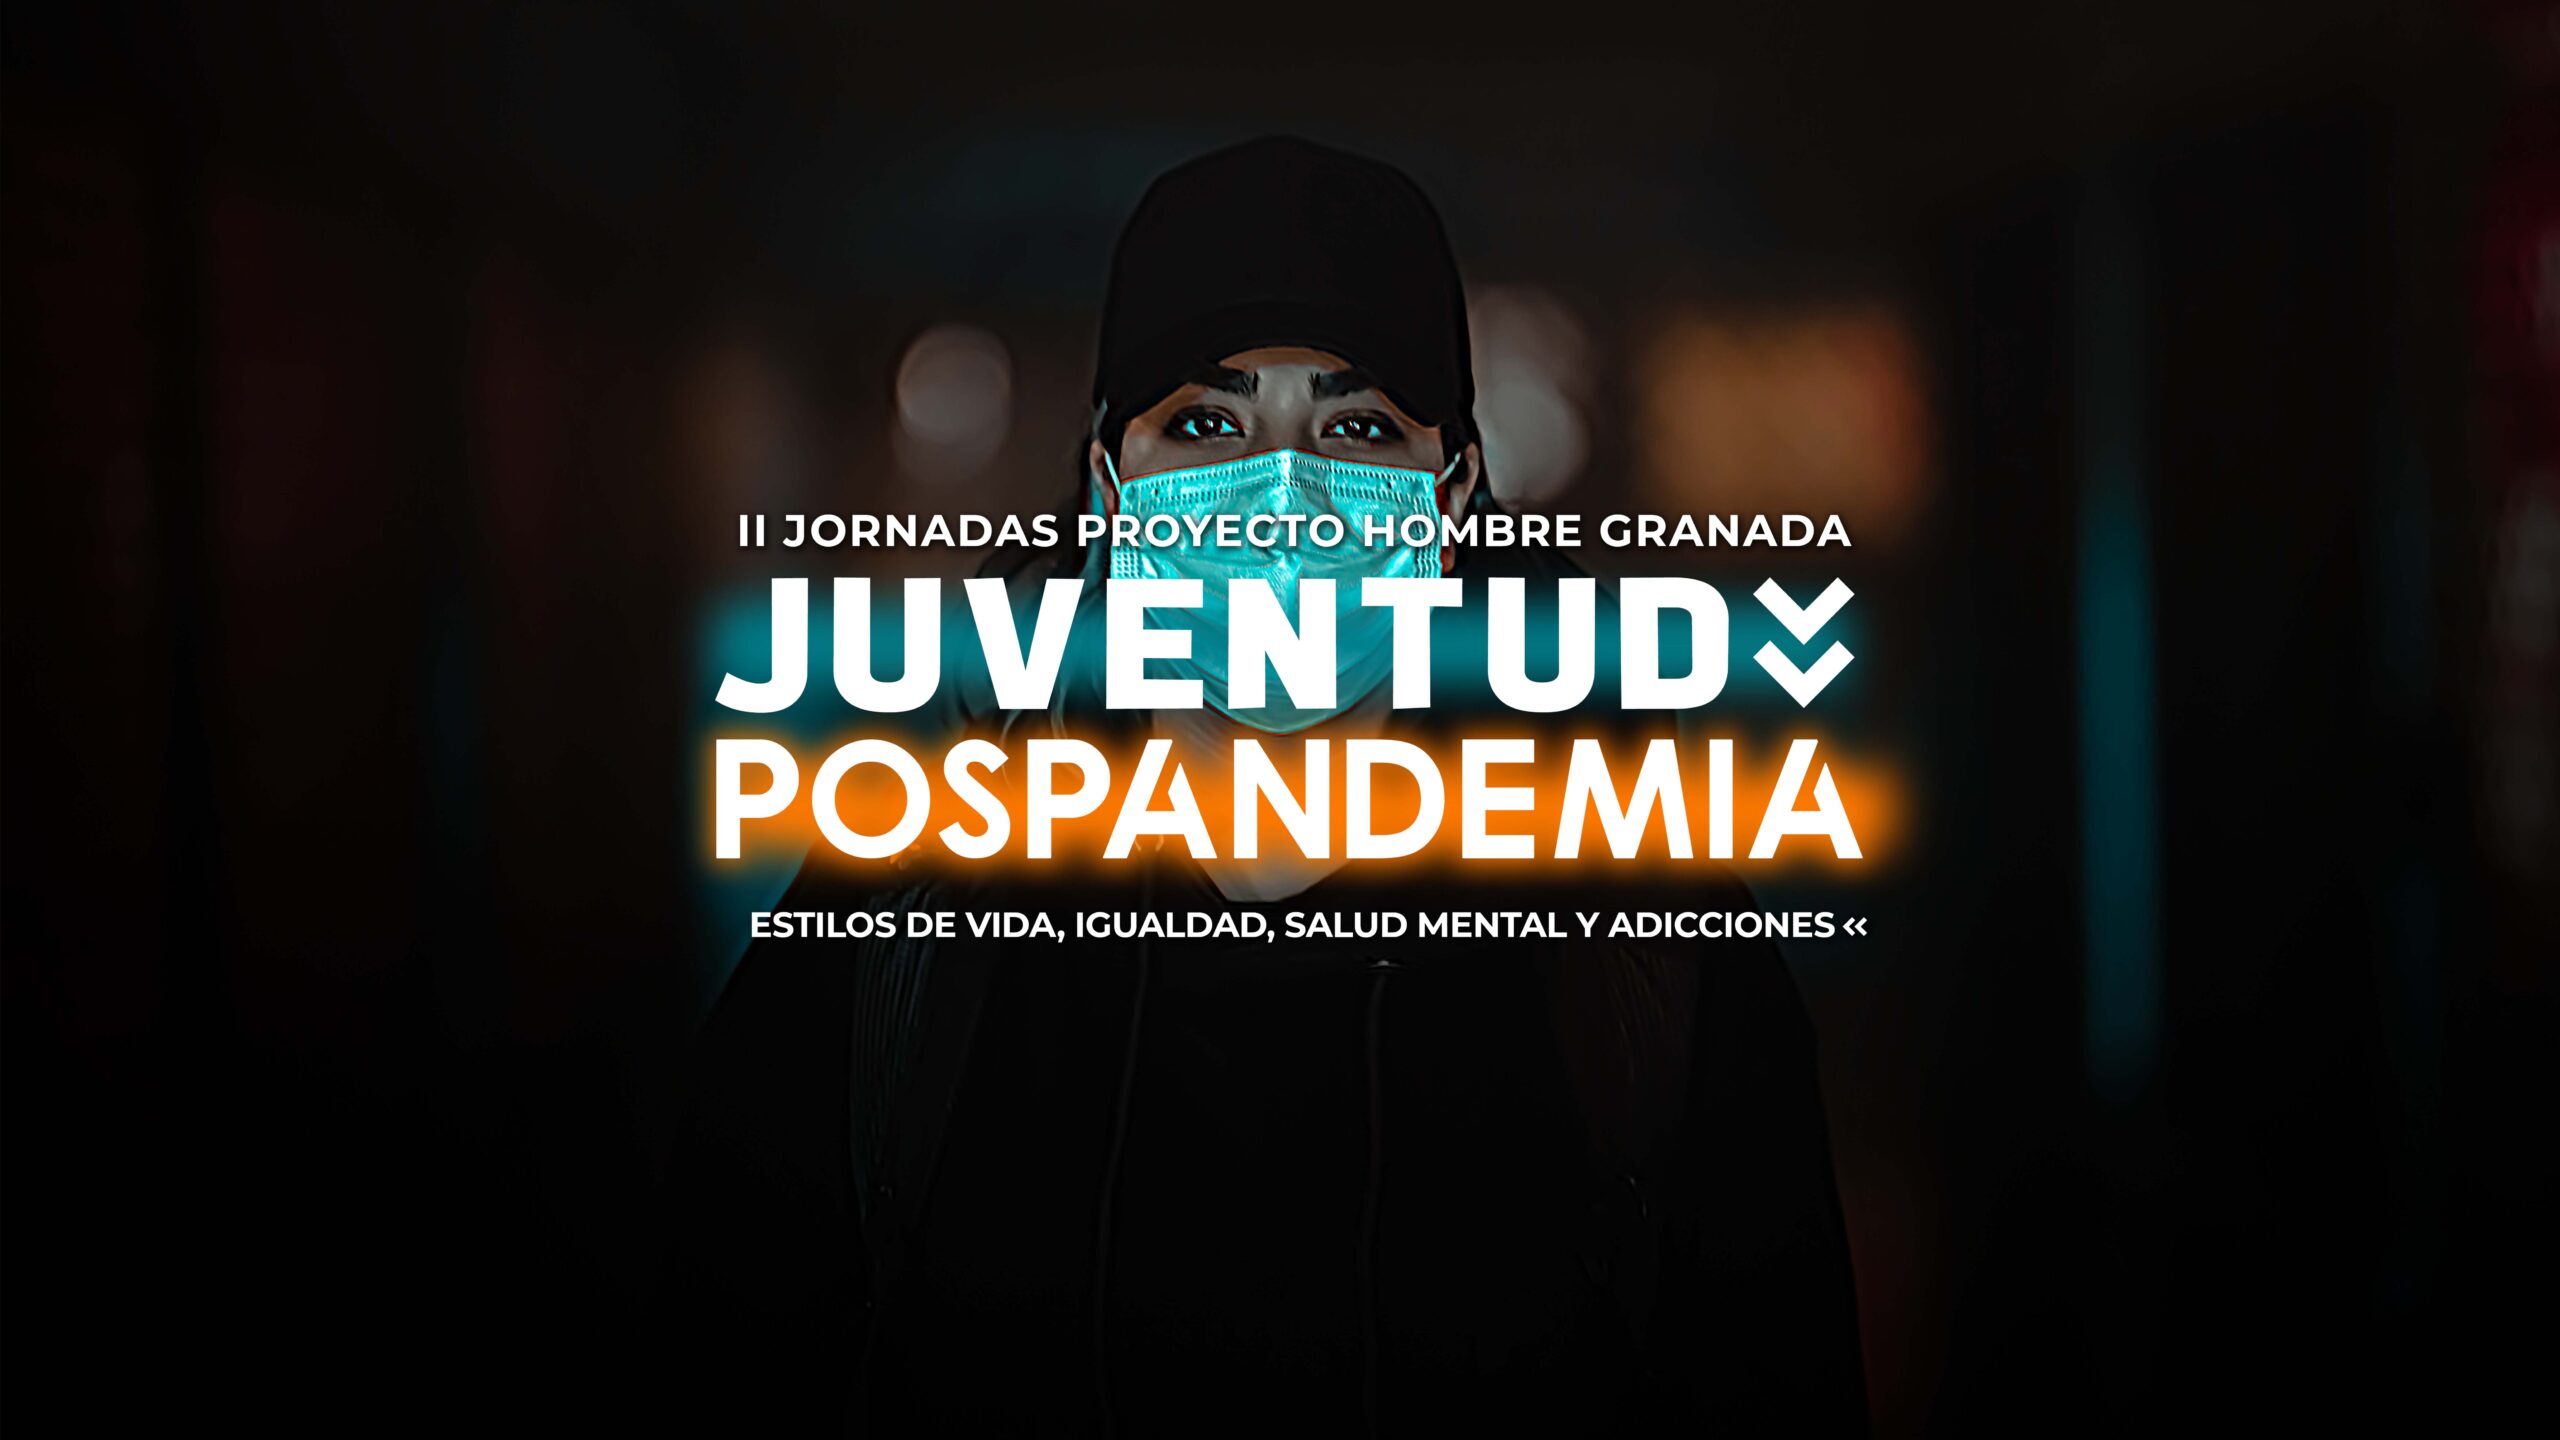 II JORNADAS JUVENTUD POSPANDEMIA